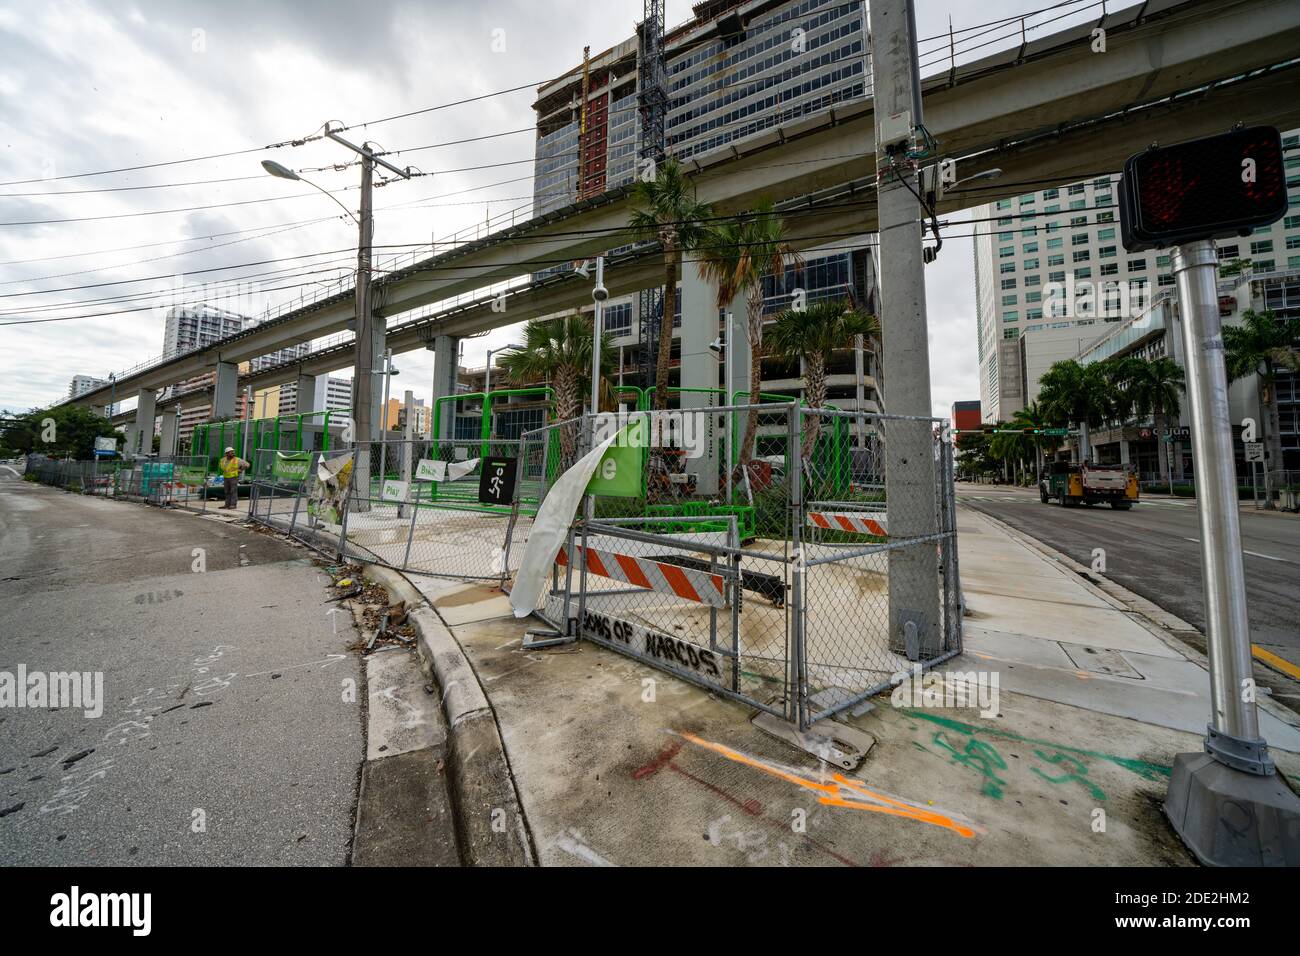 MIAMI, FL, USA - NOVEMBER 27, 2020: Construction development of The Underline Brickell Miami Stock Photo